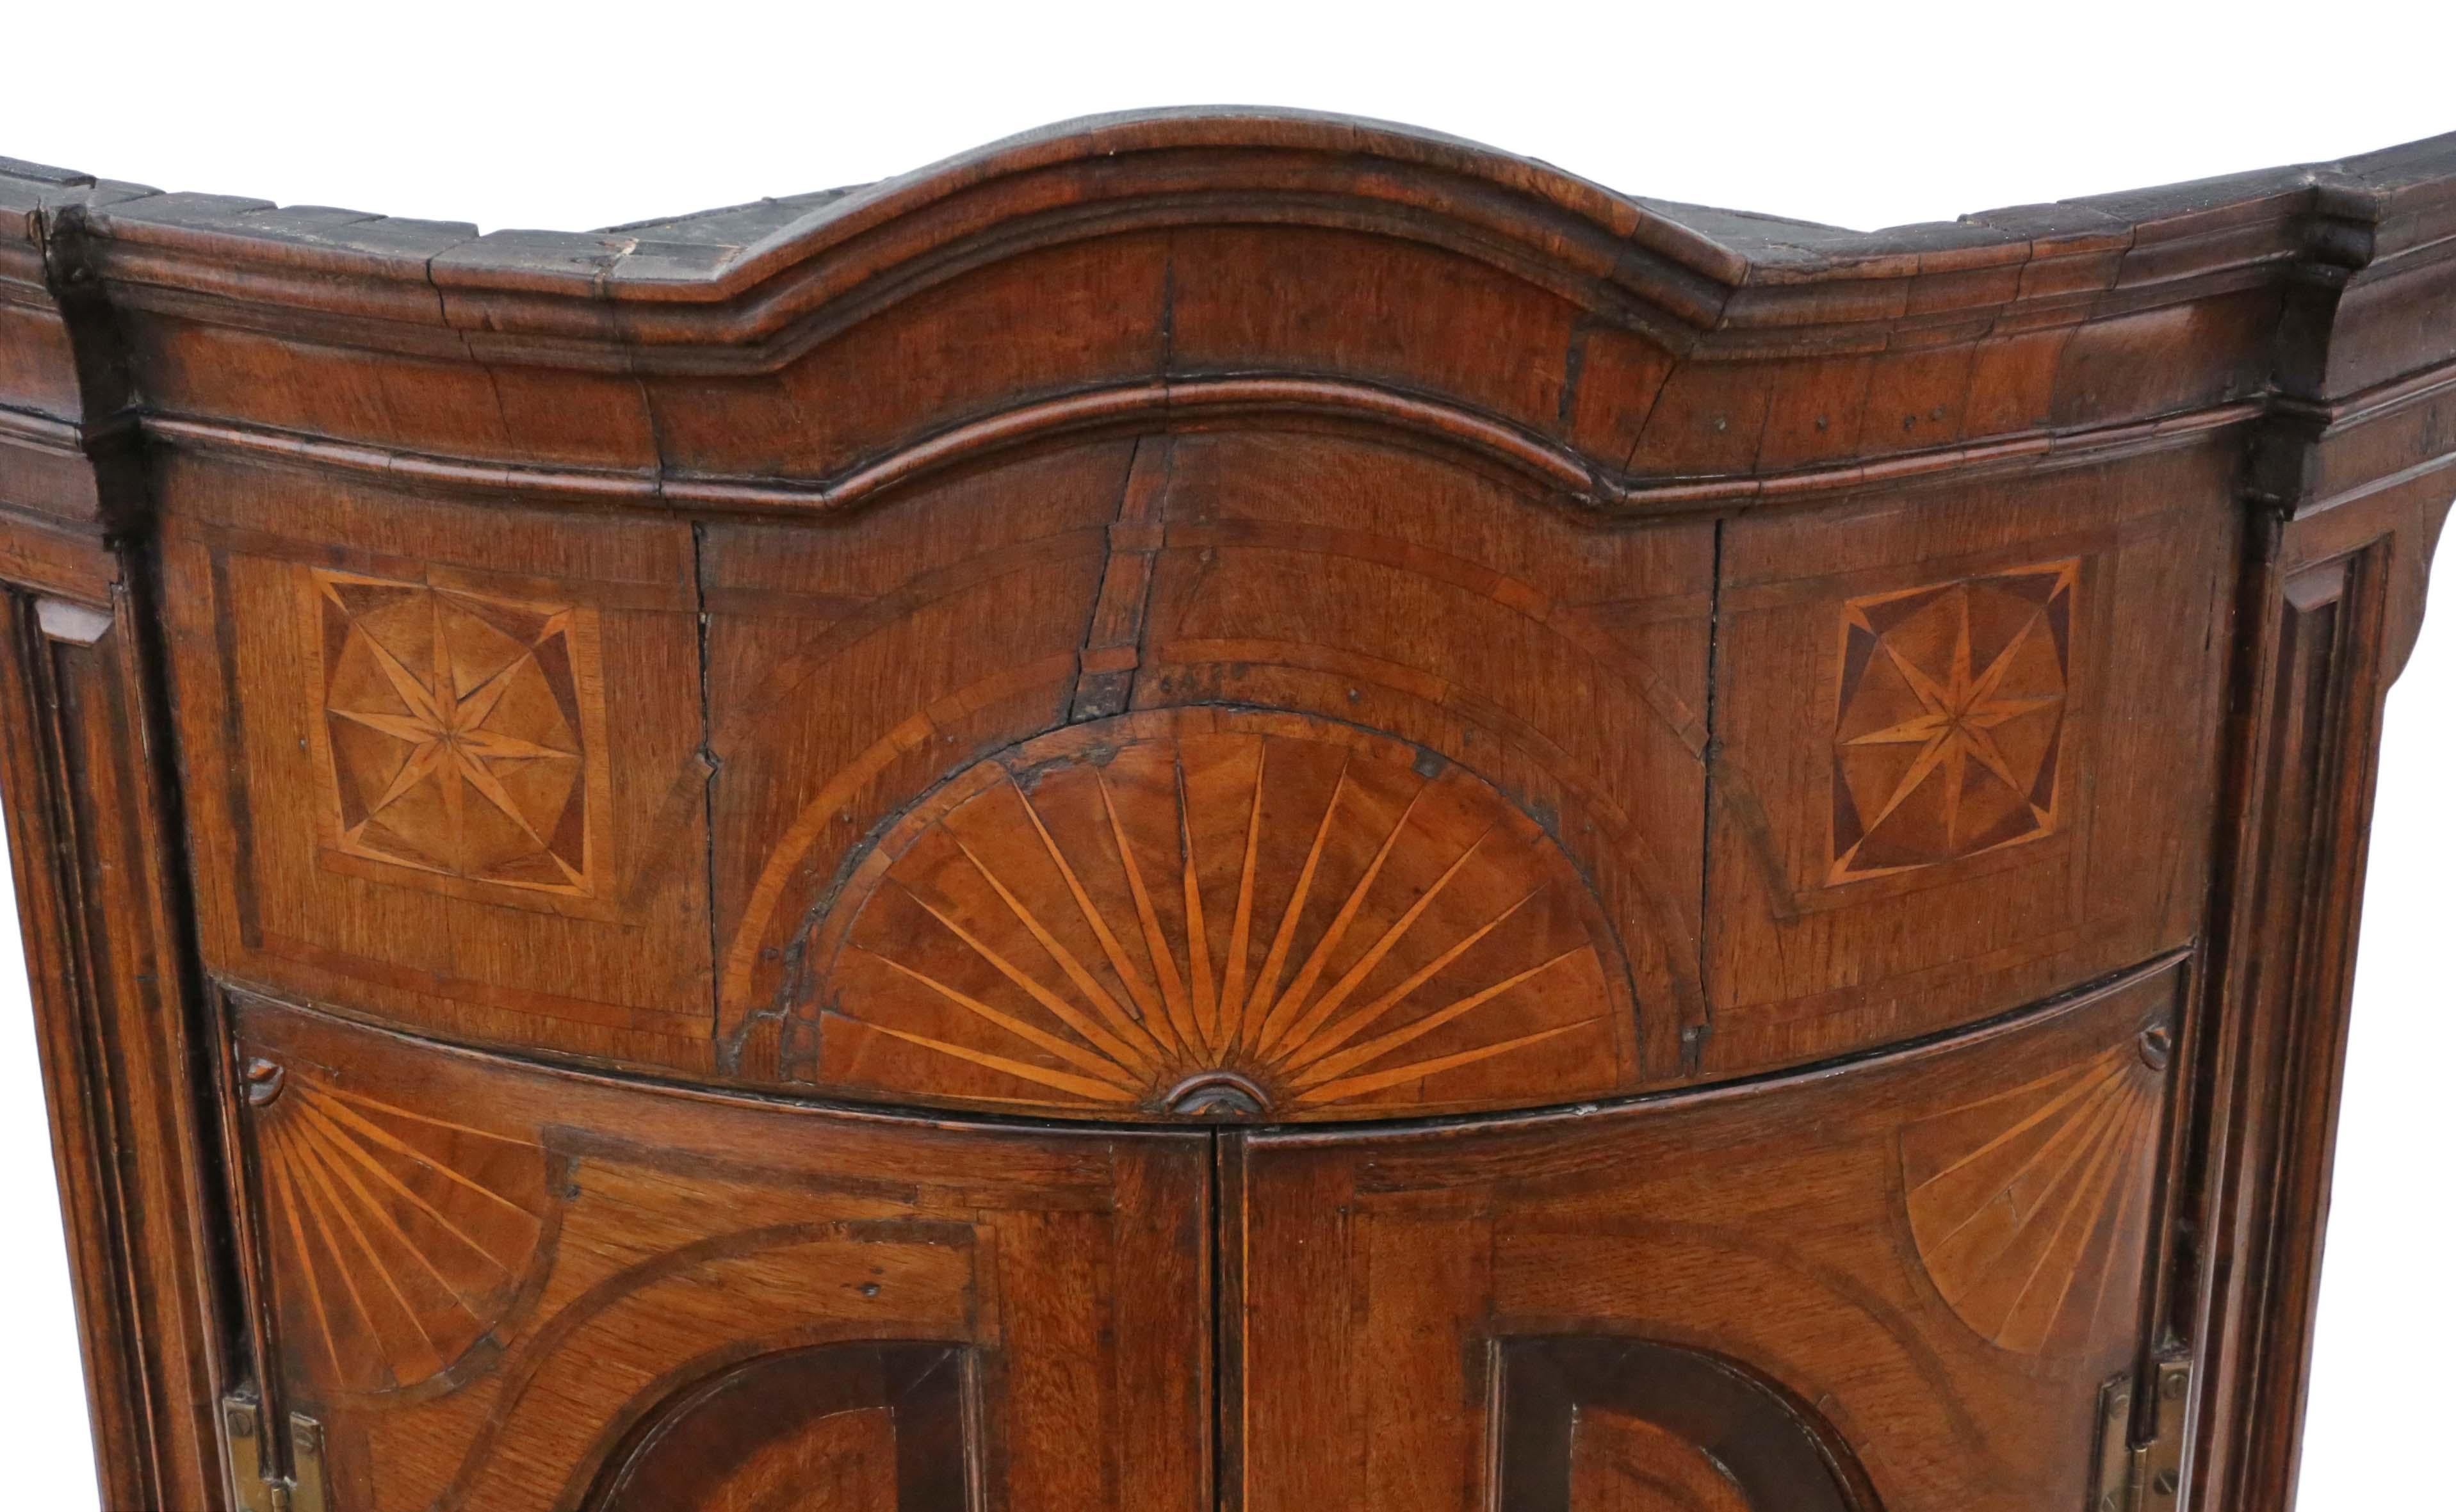 Armoire d'angle en chêne marqueté à bandes croisées de qualité ancienne, de style géorgien vers 1760. Une merveilleuse pièce d'époque, impressionnante et d'une qualité rare.
Solides et forts, sans joints lâches. Plein d'âge, de caractère et de